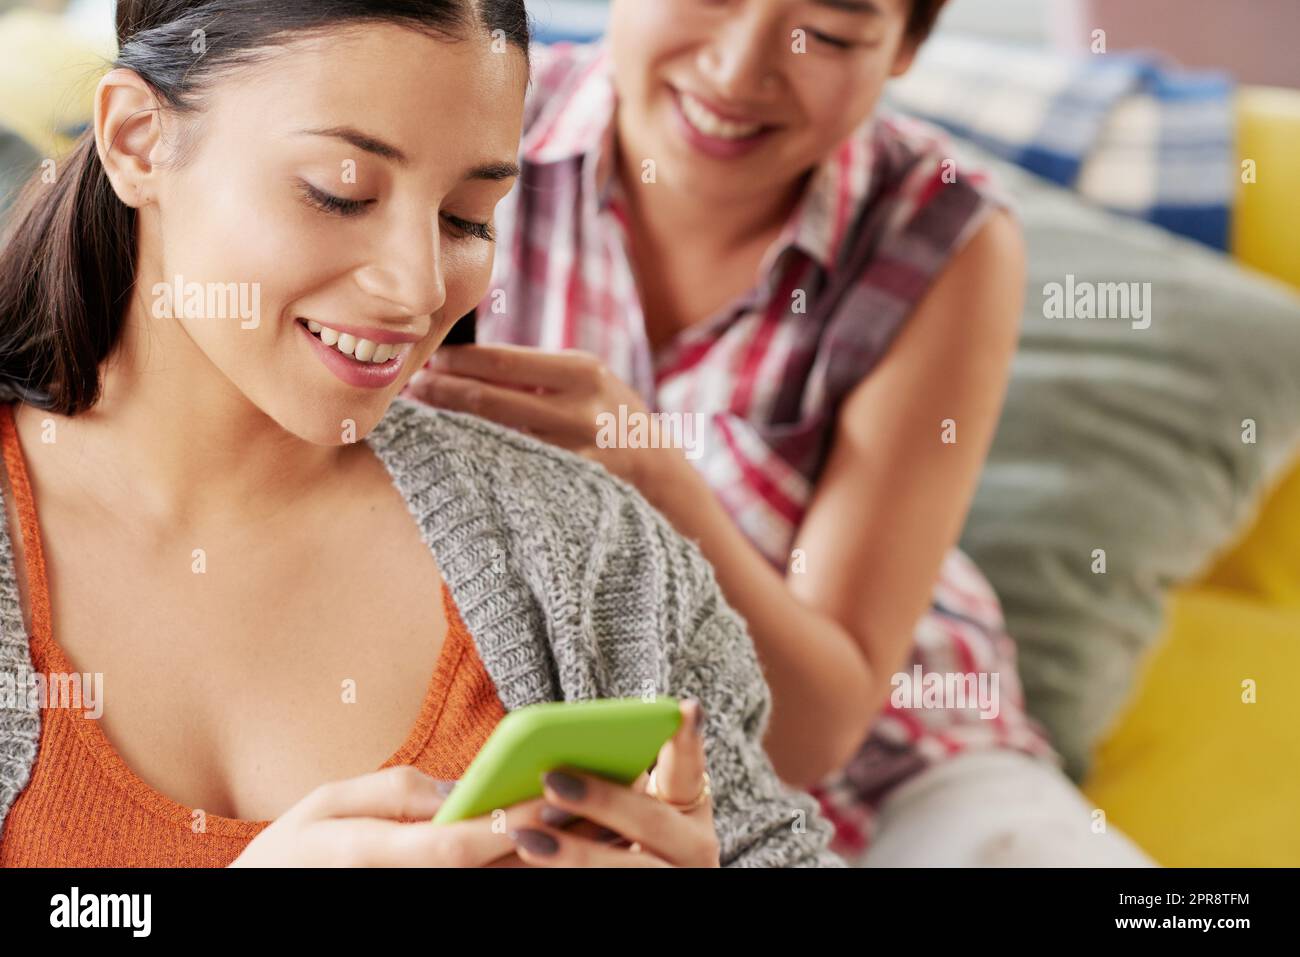 Sehen Sie sich diesen Text an. Eine Frau, die auf ihrem Handy etwas ansieht, während ihre Freundin ihre Haare macht. Stockfoto